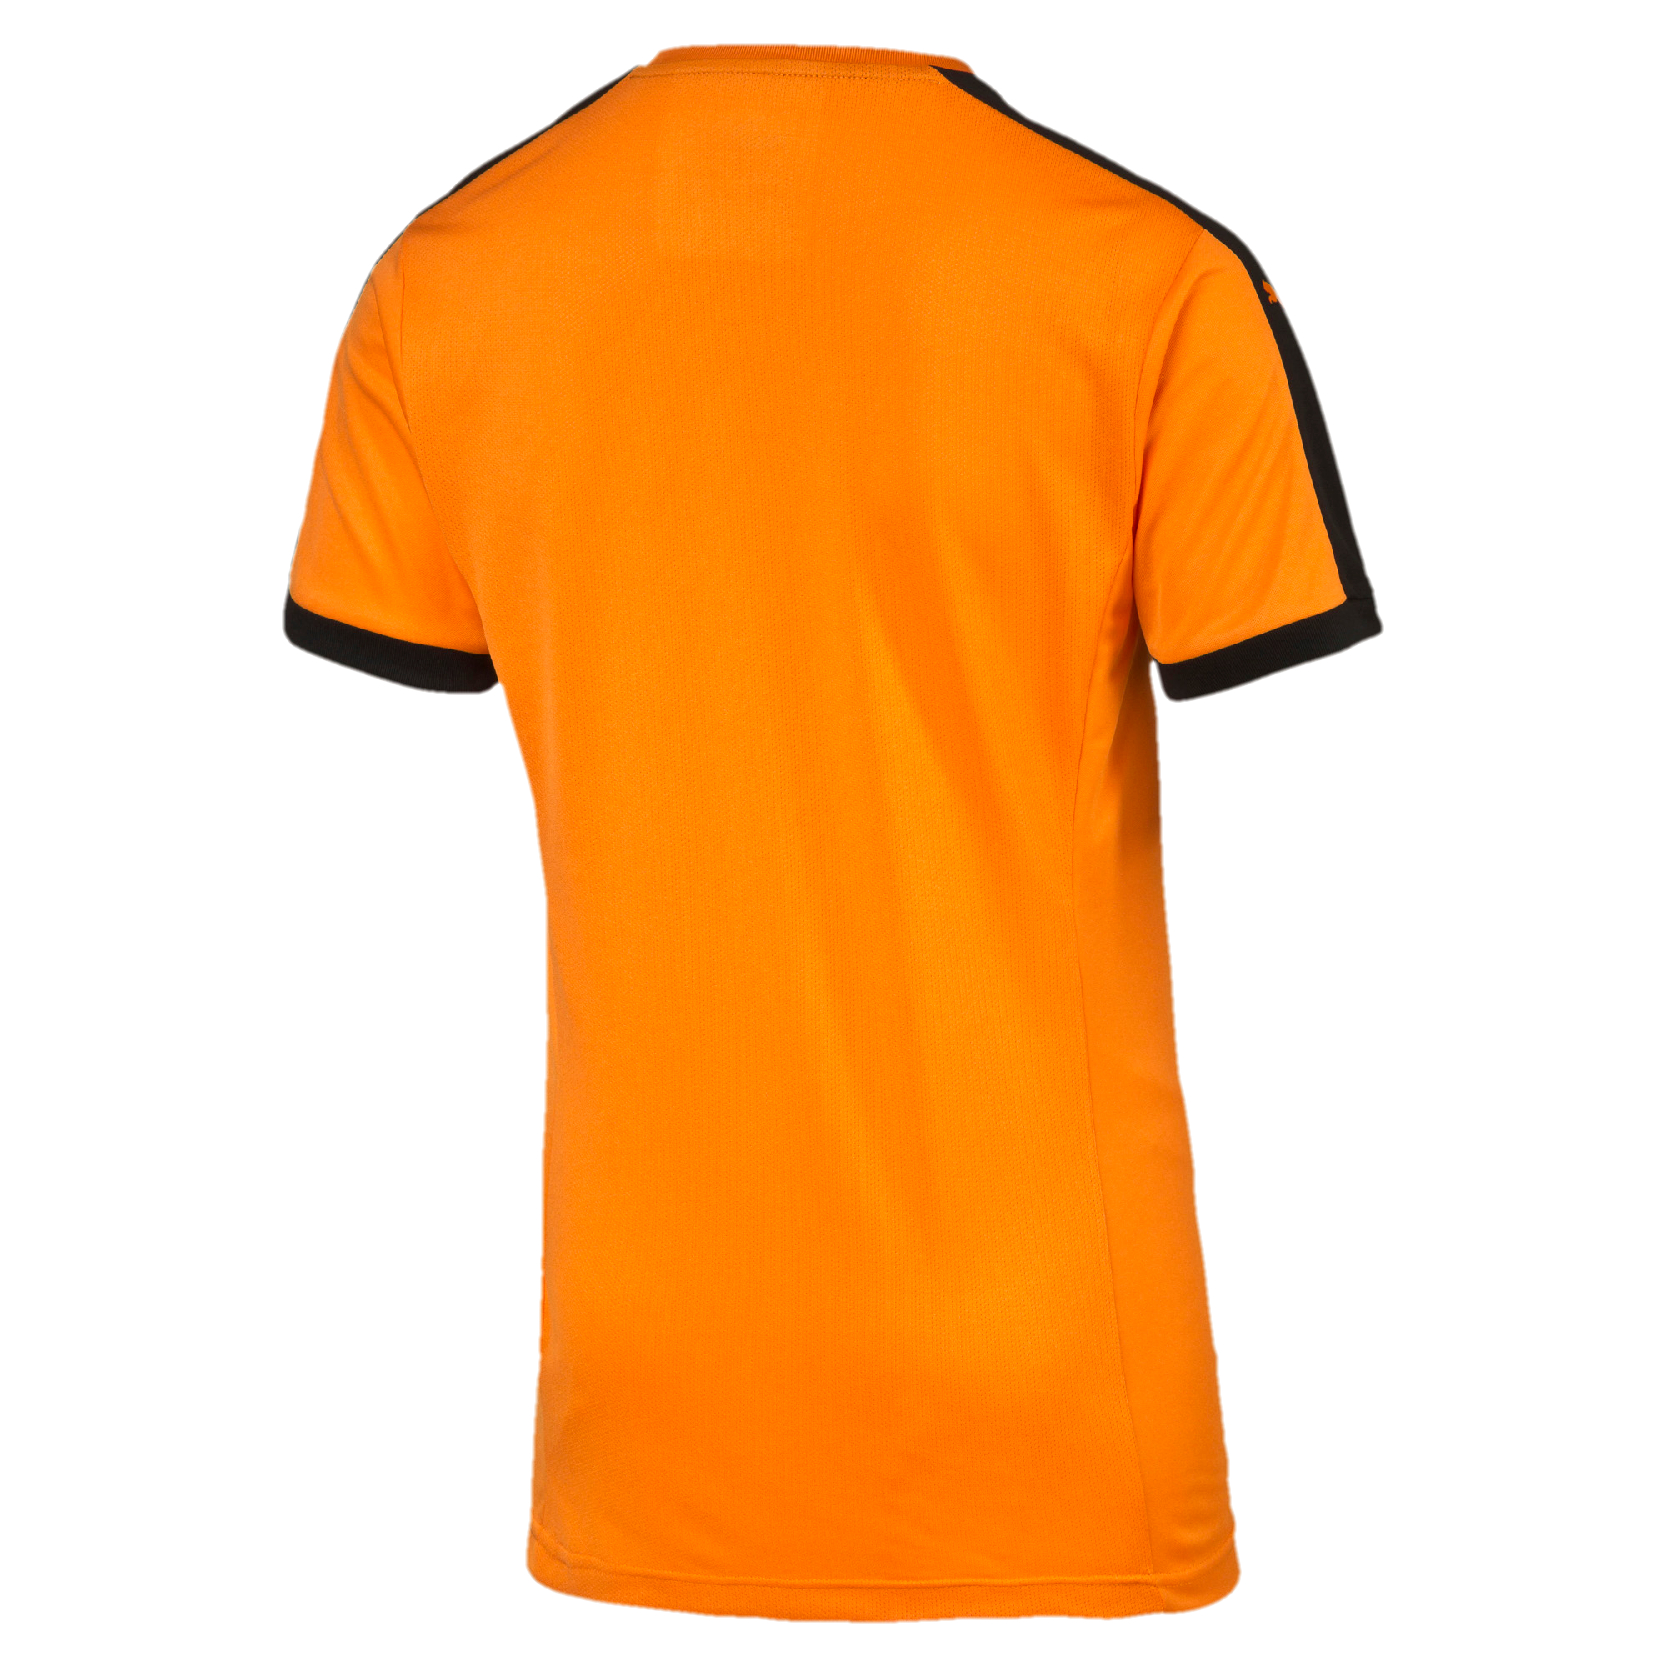 PUMA Pitch Shortsleeved Shirt Unisex Trainingsshirt 702070 Orange